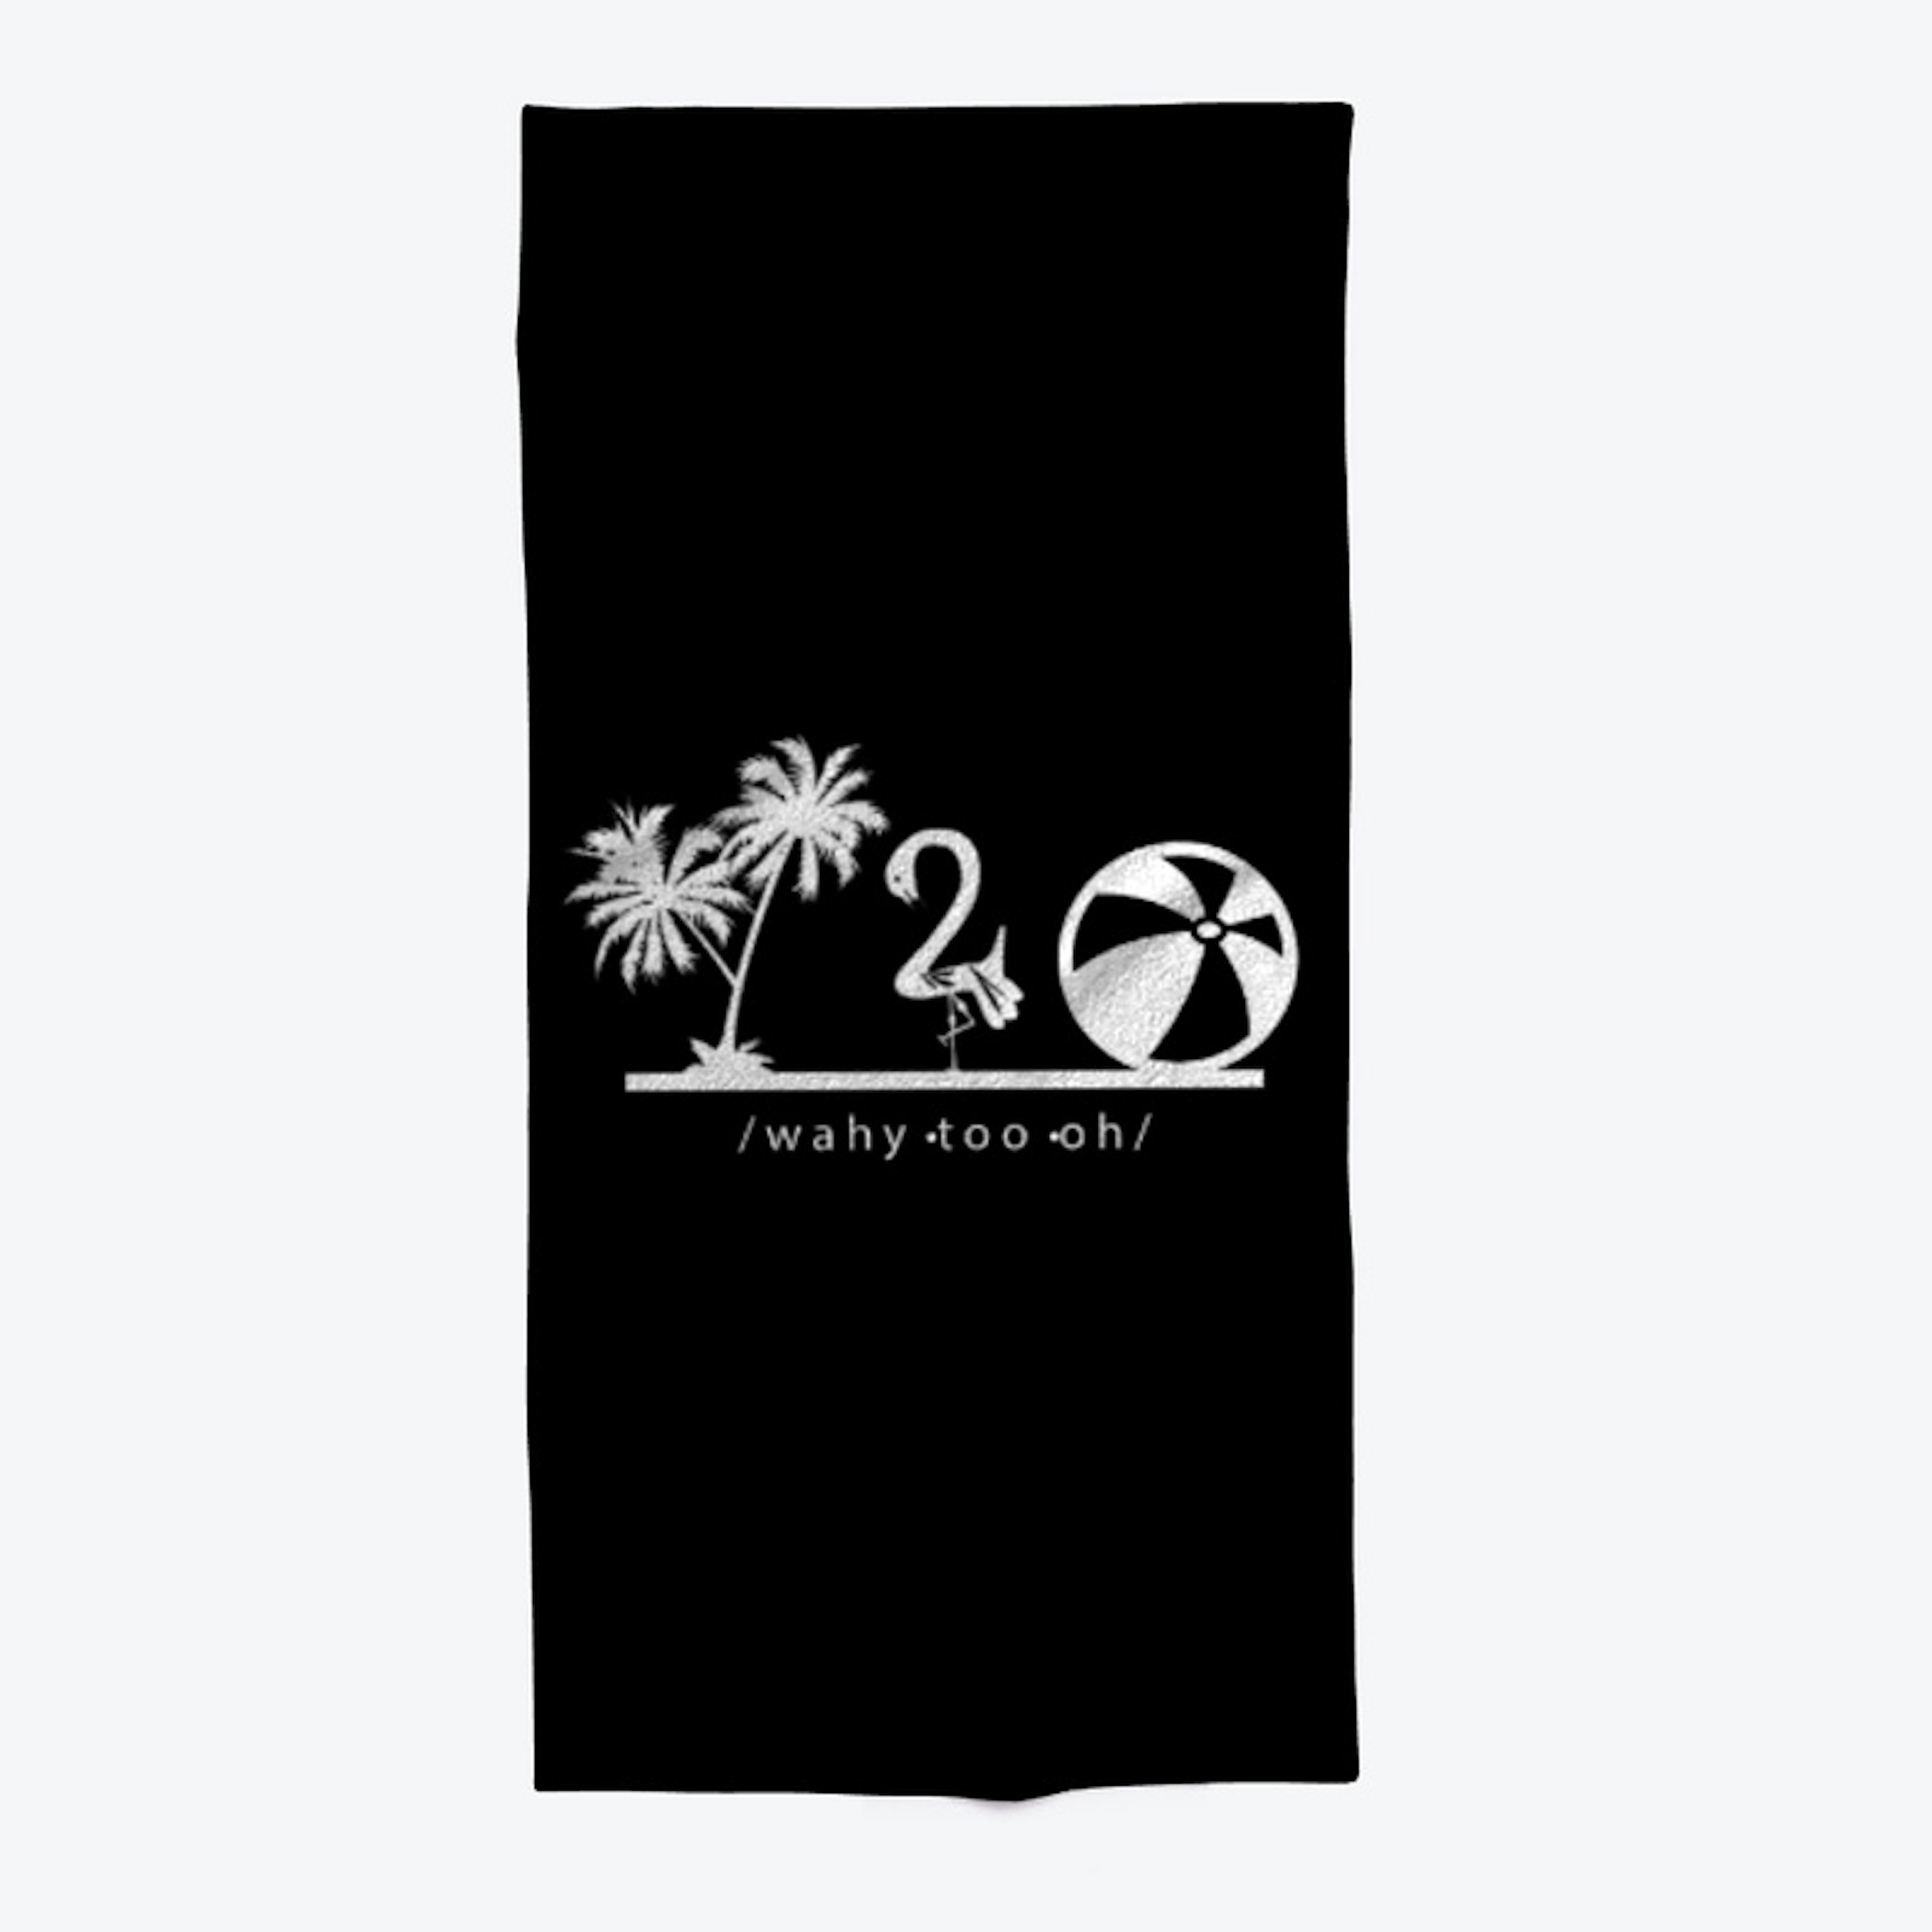 Y20 Summer Shirt 